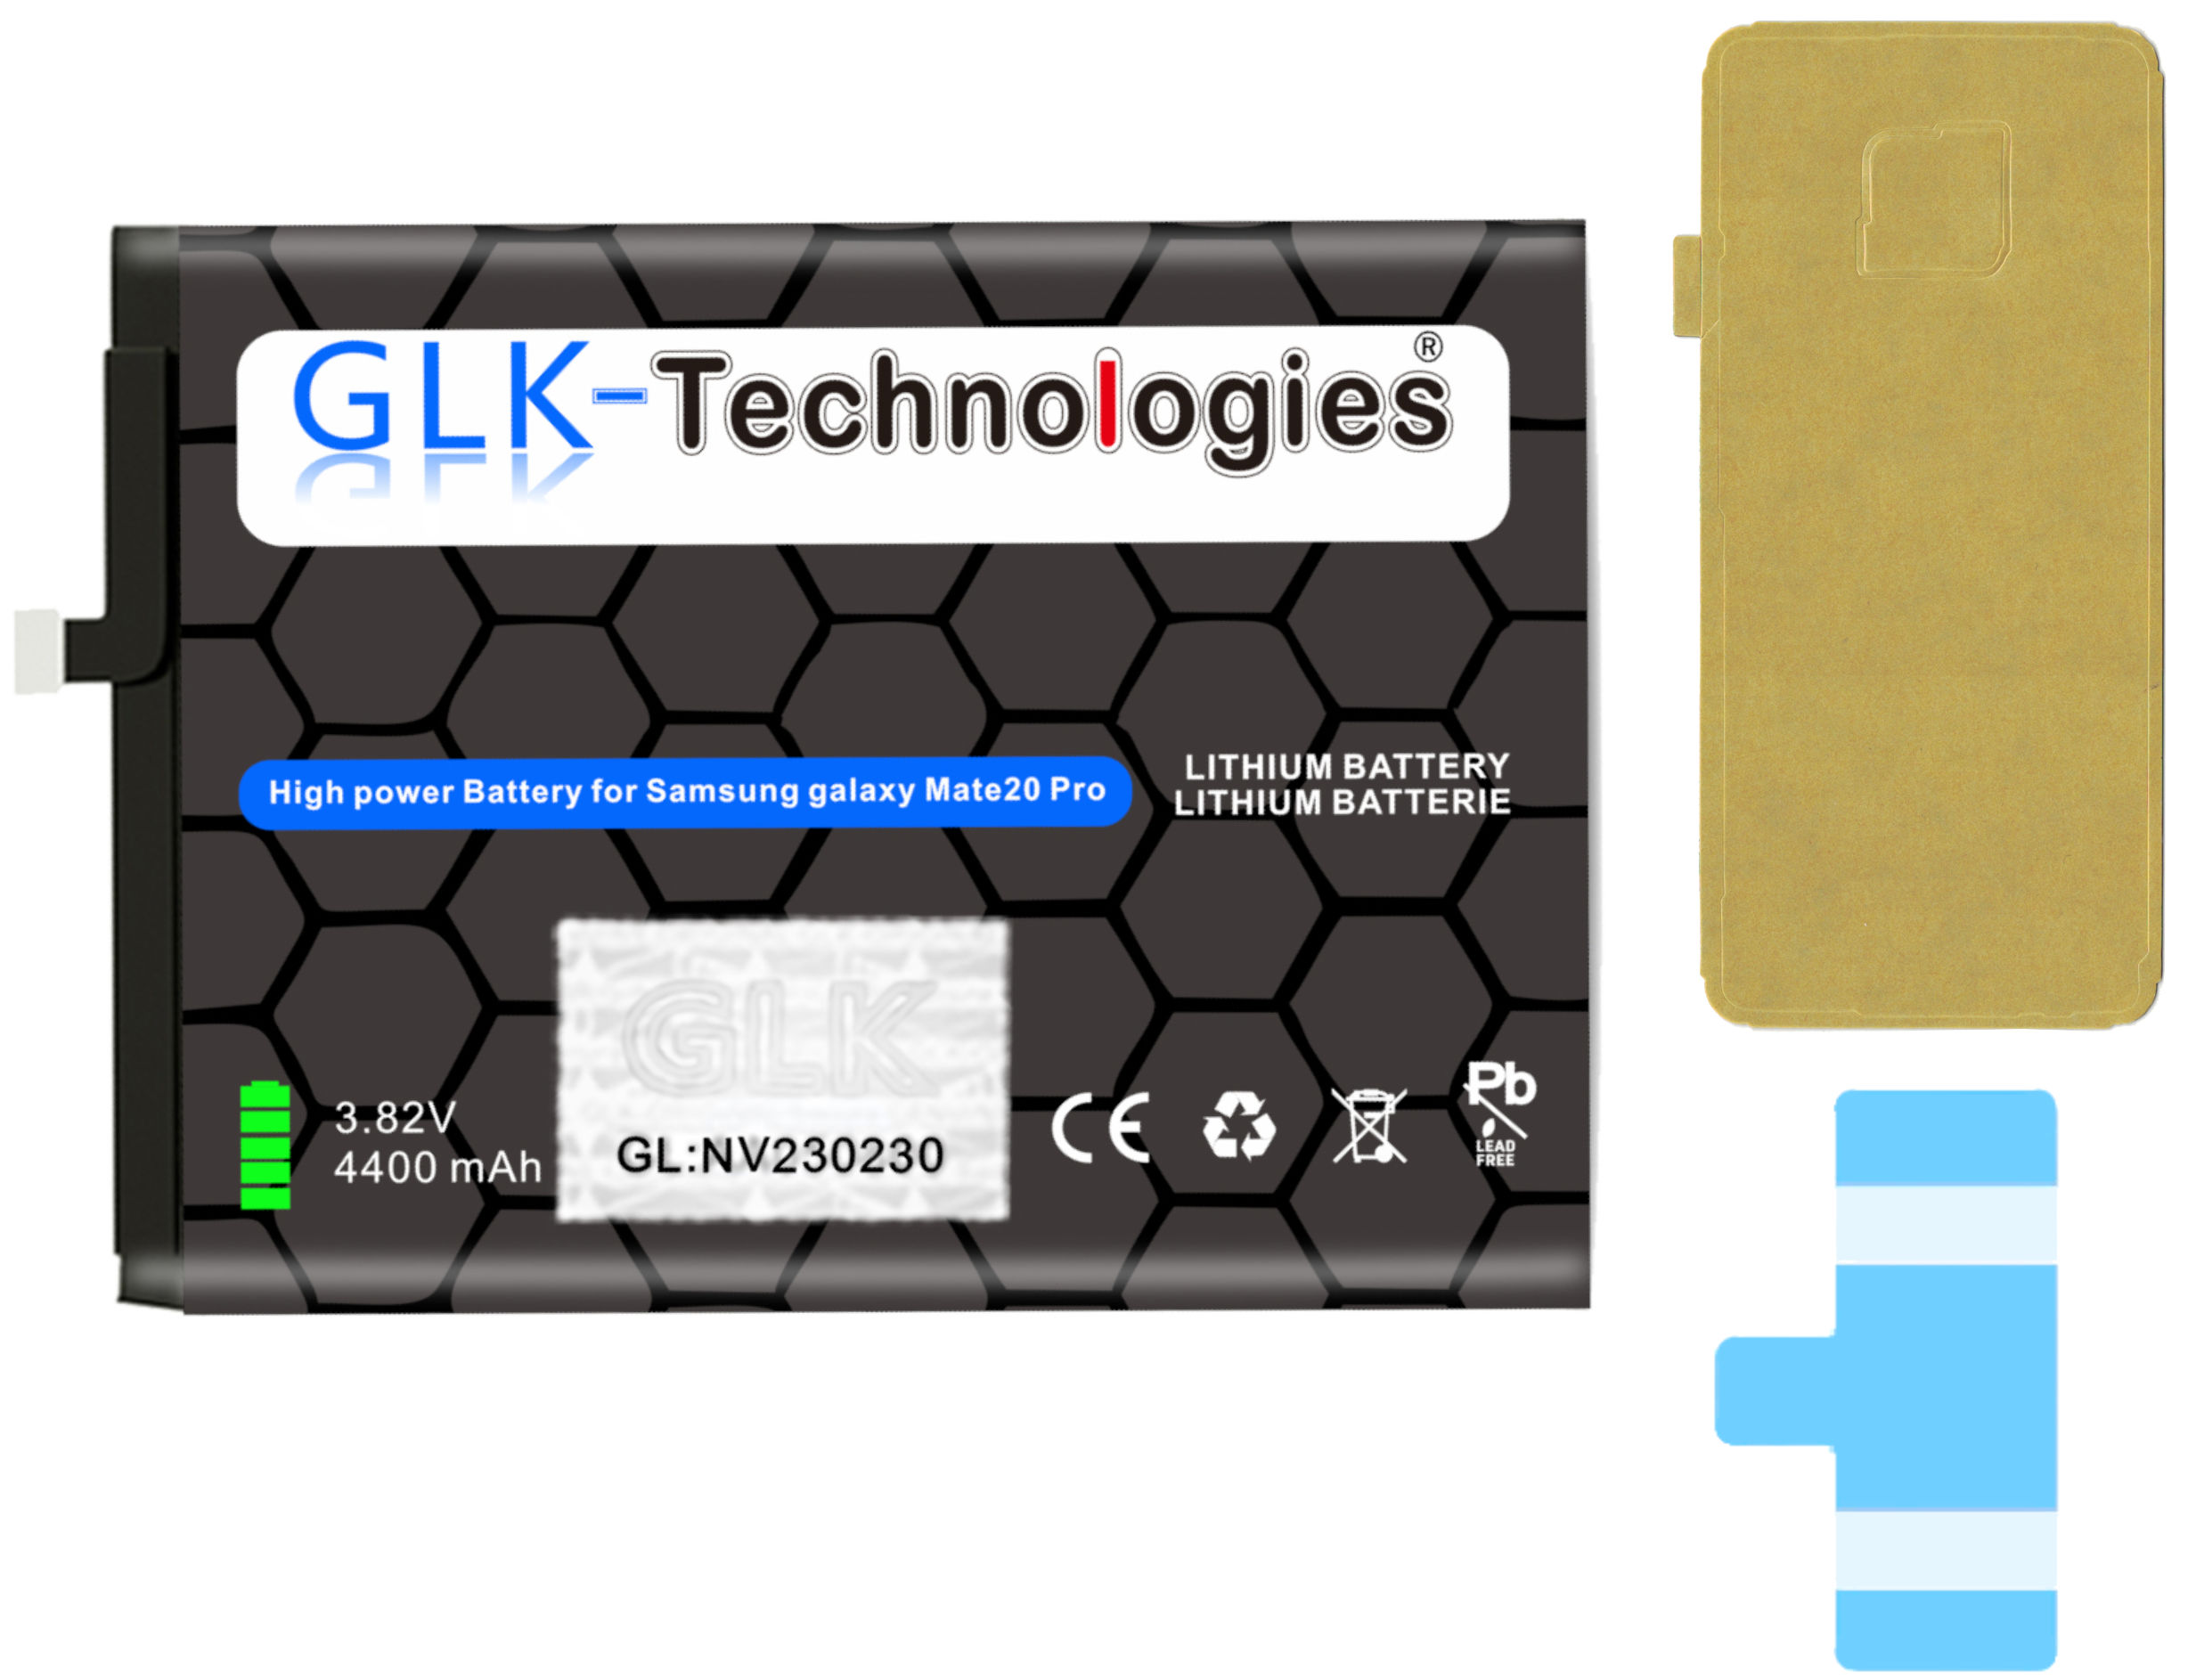 Ersatz P30 Akku Ersatz GLK-TECHNOLOGIES / Lithium-Ionen-Akku PRO HB486486ECW 4400mAh Huawei inkl. Akku für Mate 20 Klebebandsätze PRO